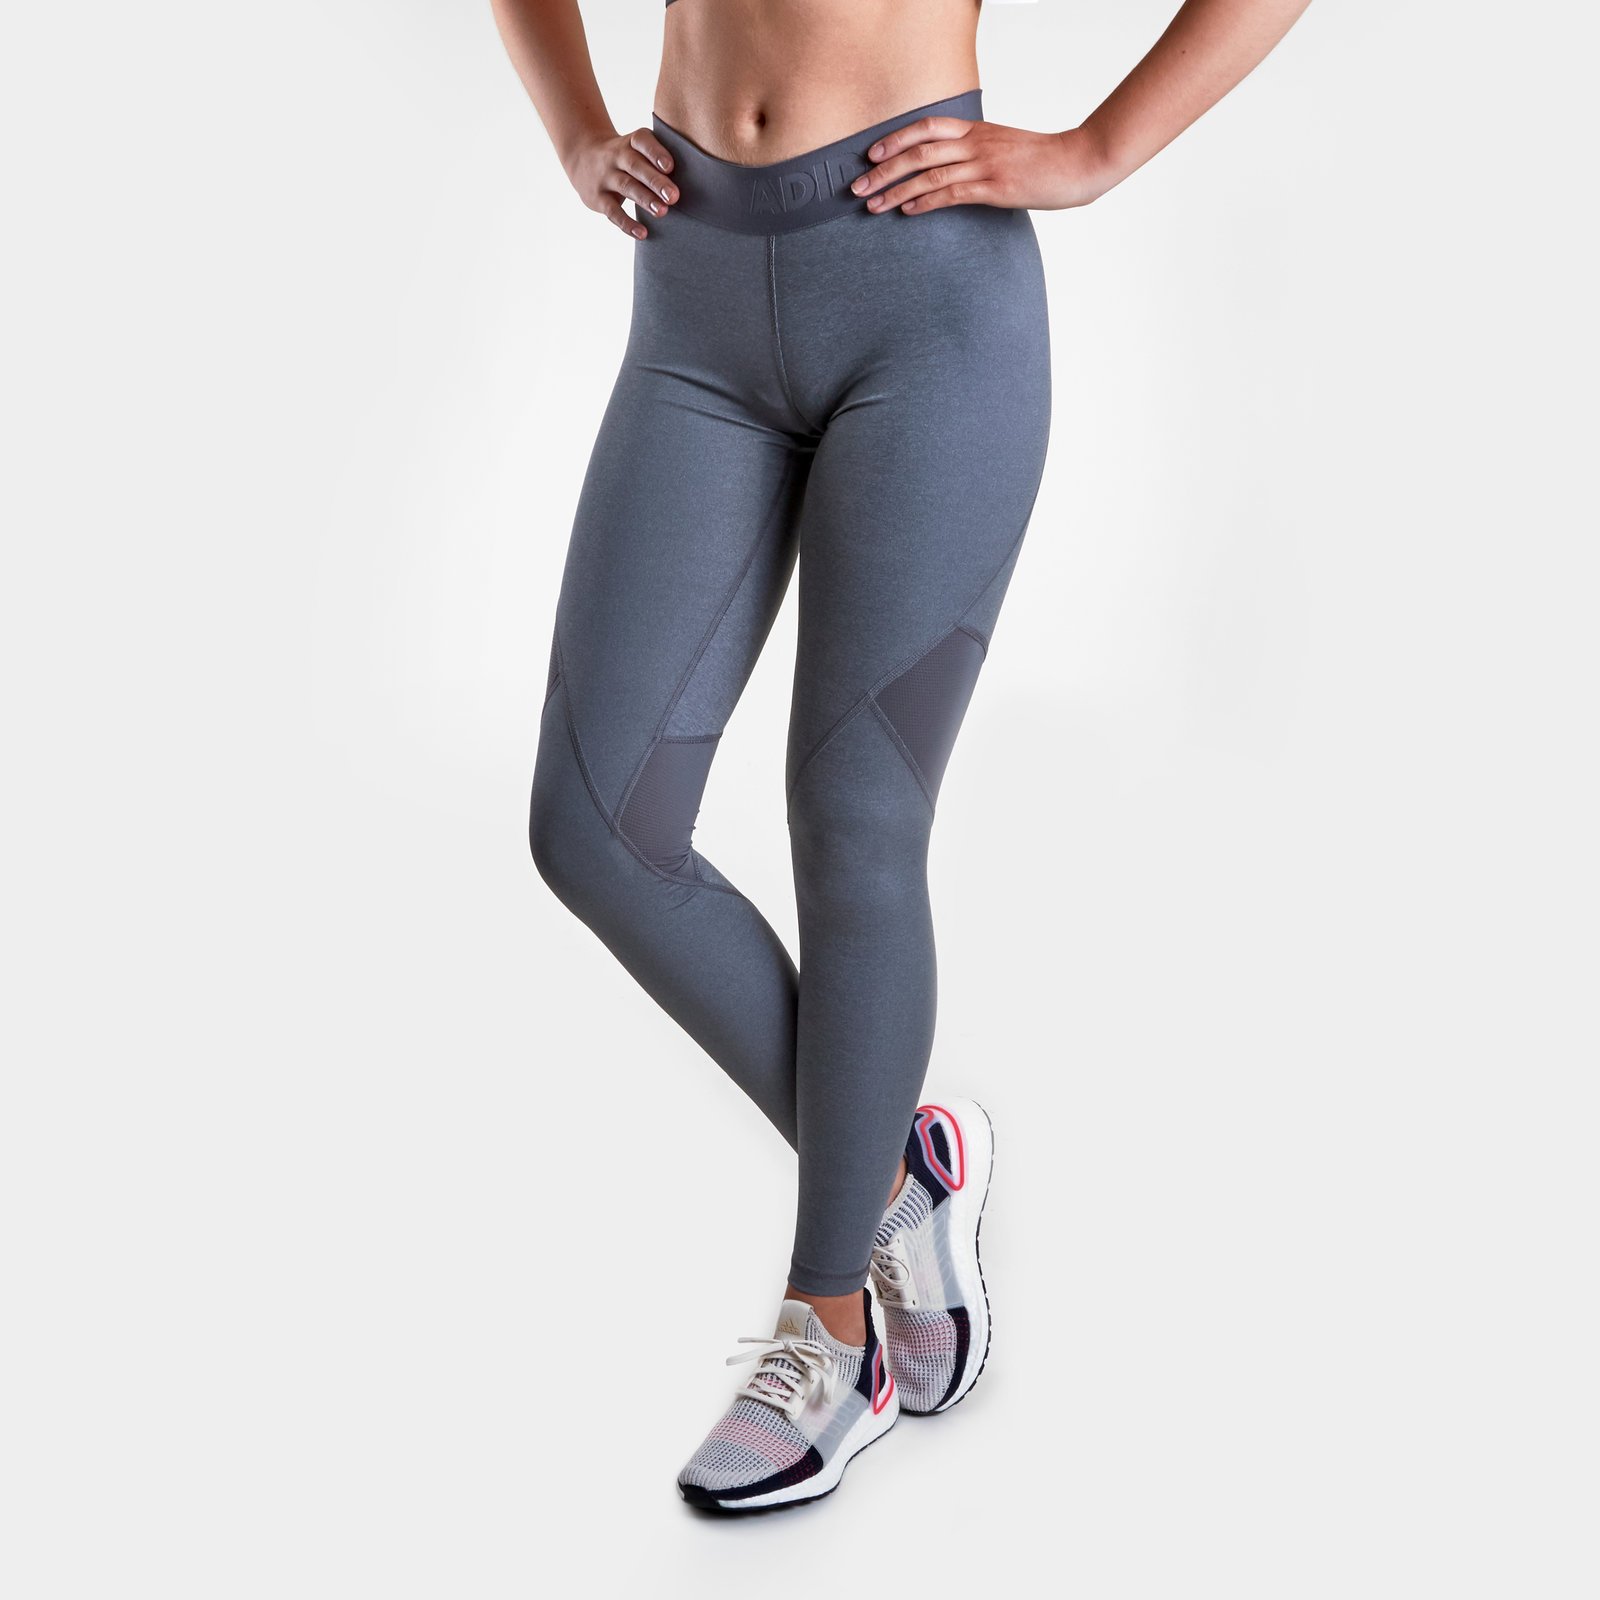 fitness clothing Womens Leggings